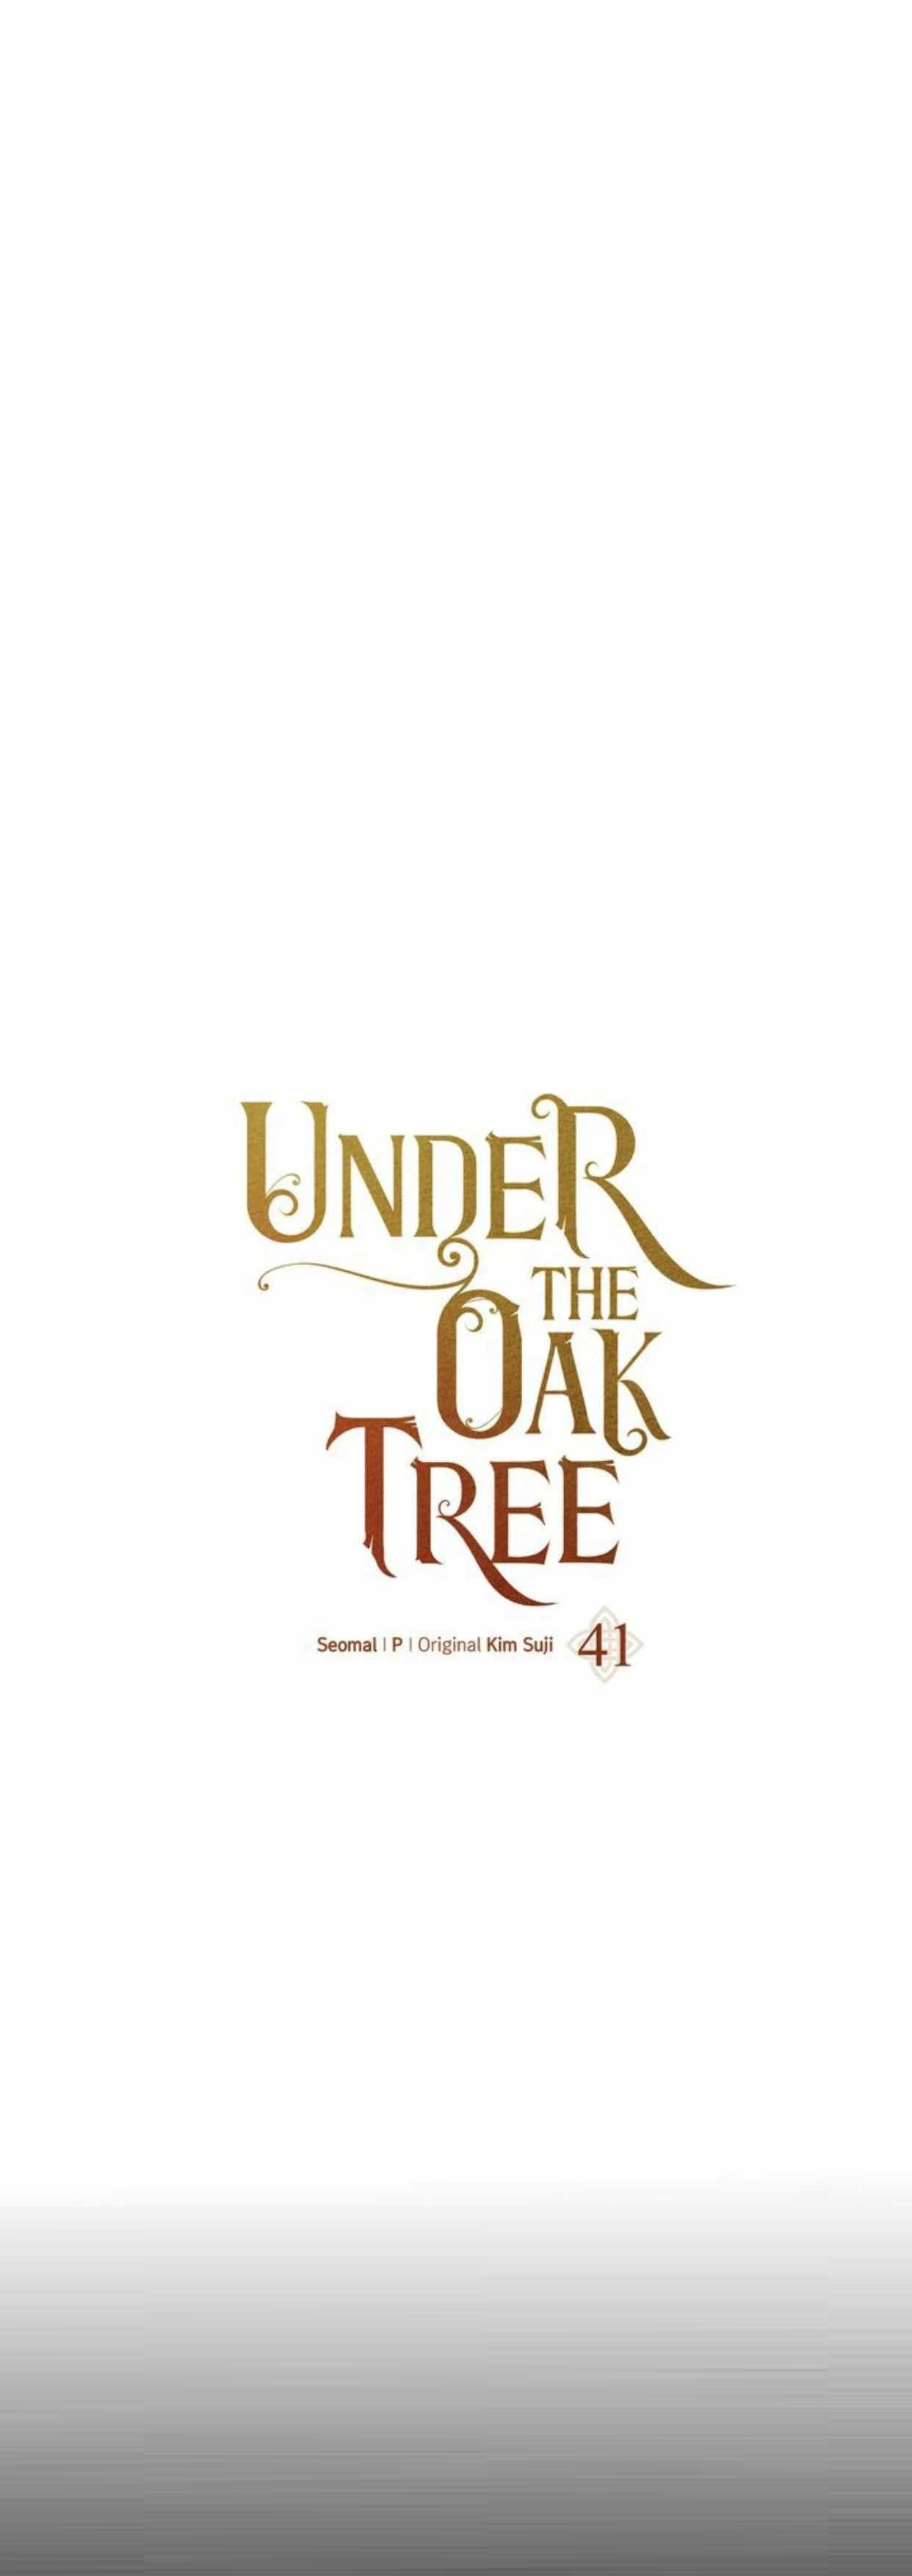 under the oak tree 41